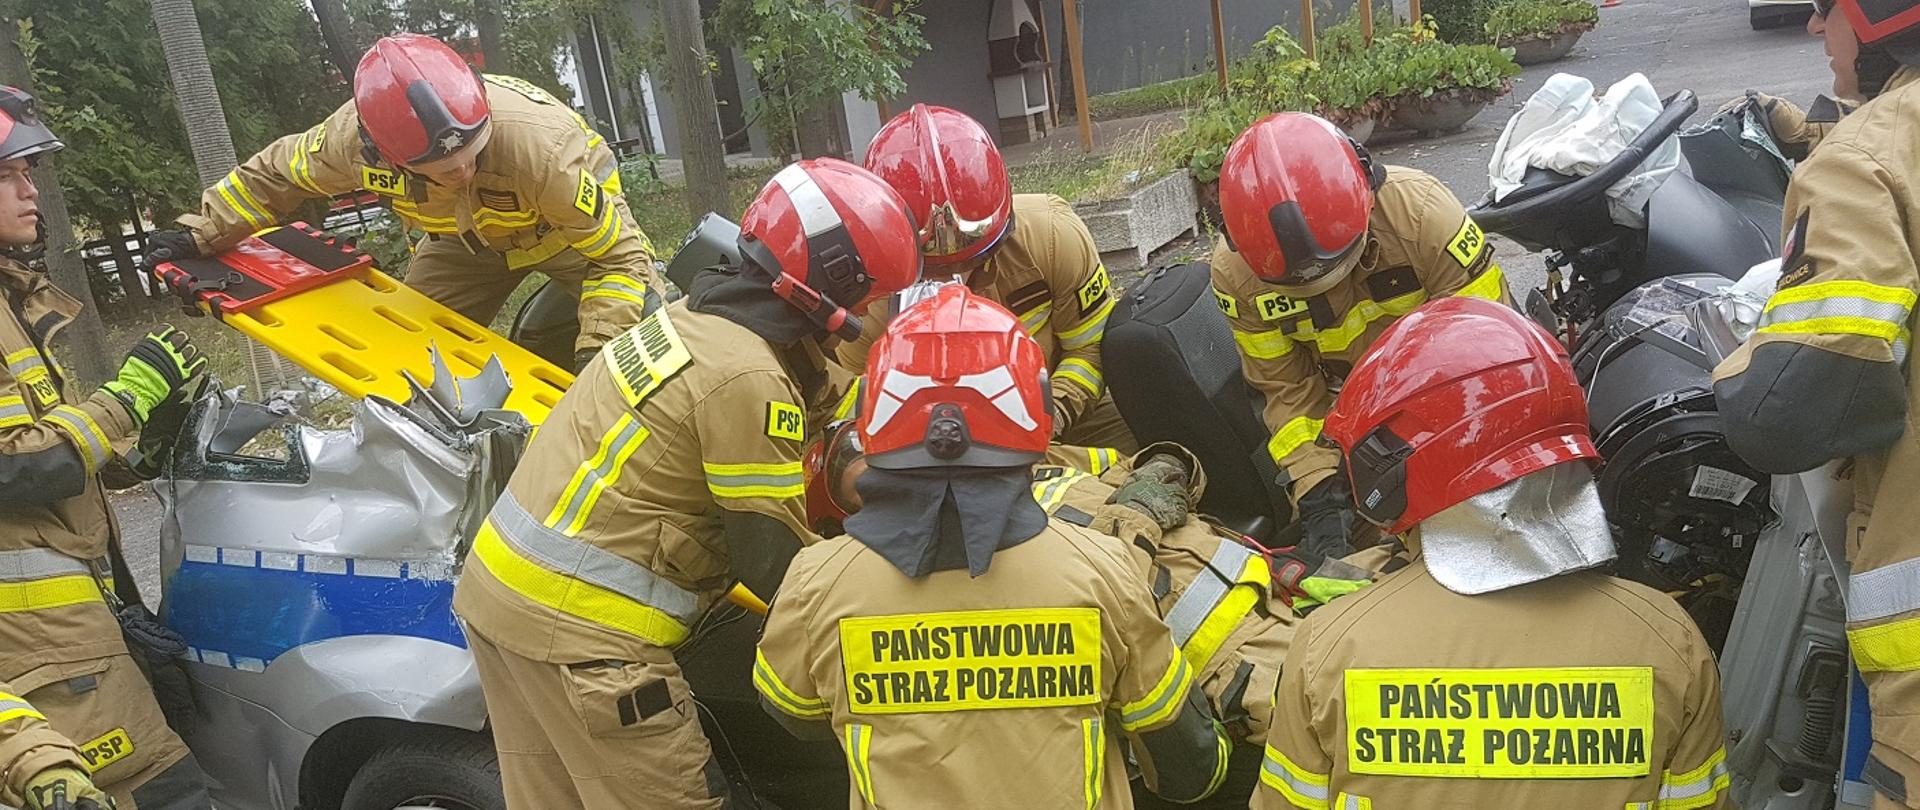 Zdjęcie przedstawia ćwiczenia z zakresu ratownictwa technicznego - ewakuację poszkodowanego z samochodu